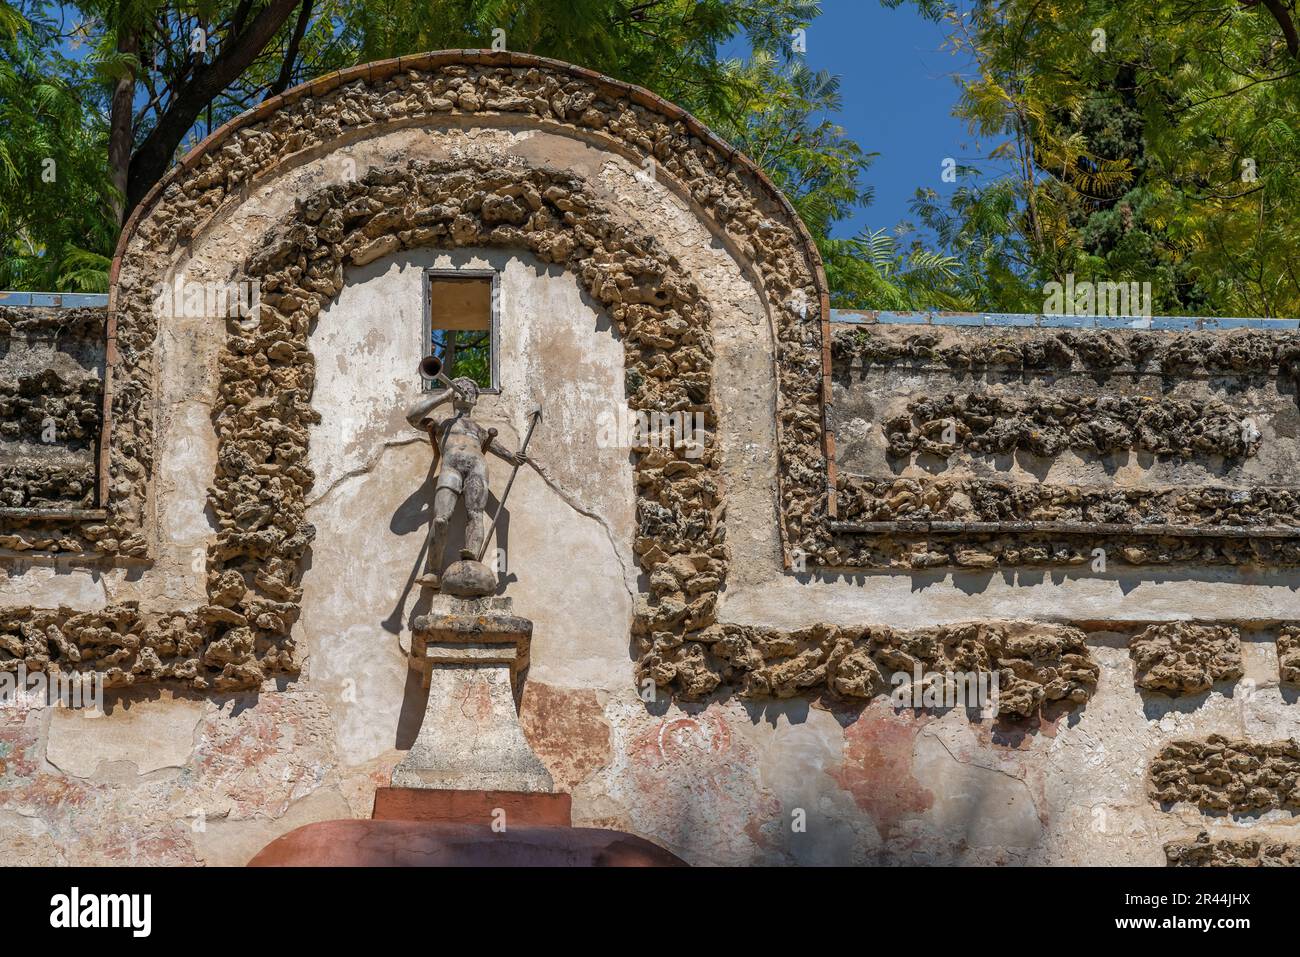 Fuente de La Fama (Berühmtheitsbrunnen) in den Alcazar-Gärten (Königlicher Palast von Sevilla) - Sevilla, Andalusien, Spanien Stockfoto